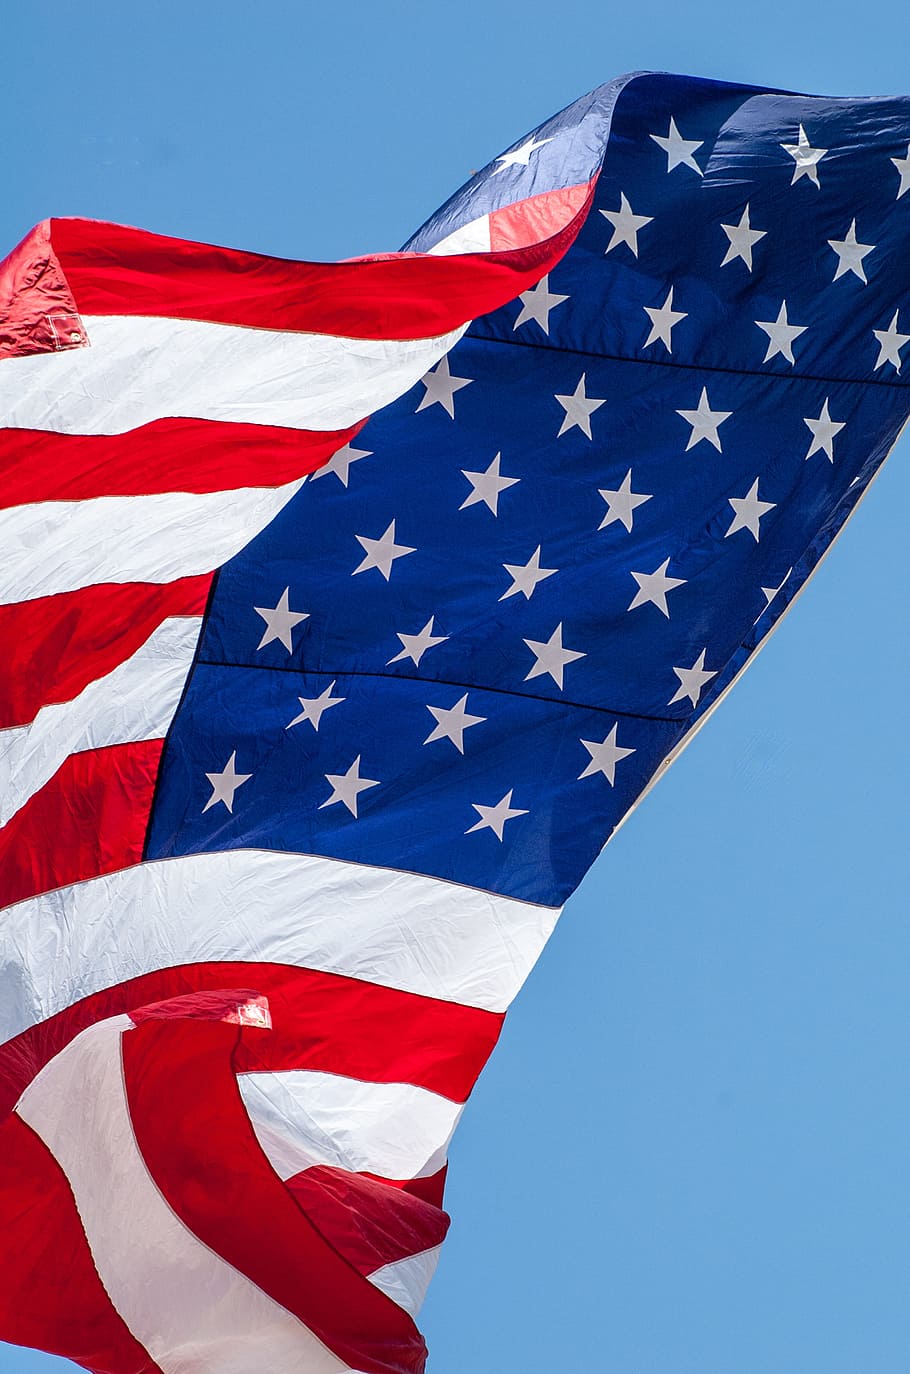 USA flag waving at daytime, american flag, american flag waving